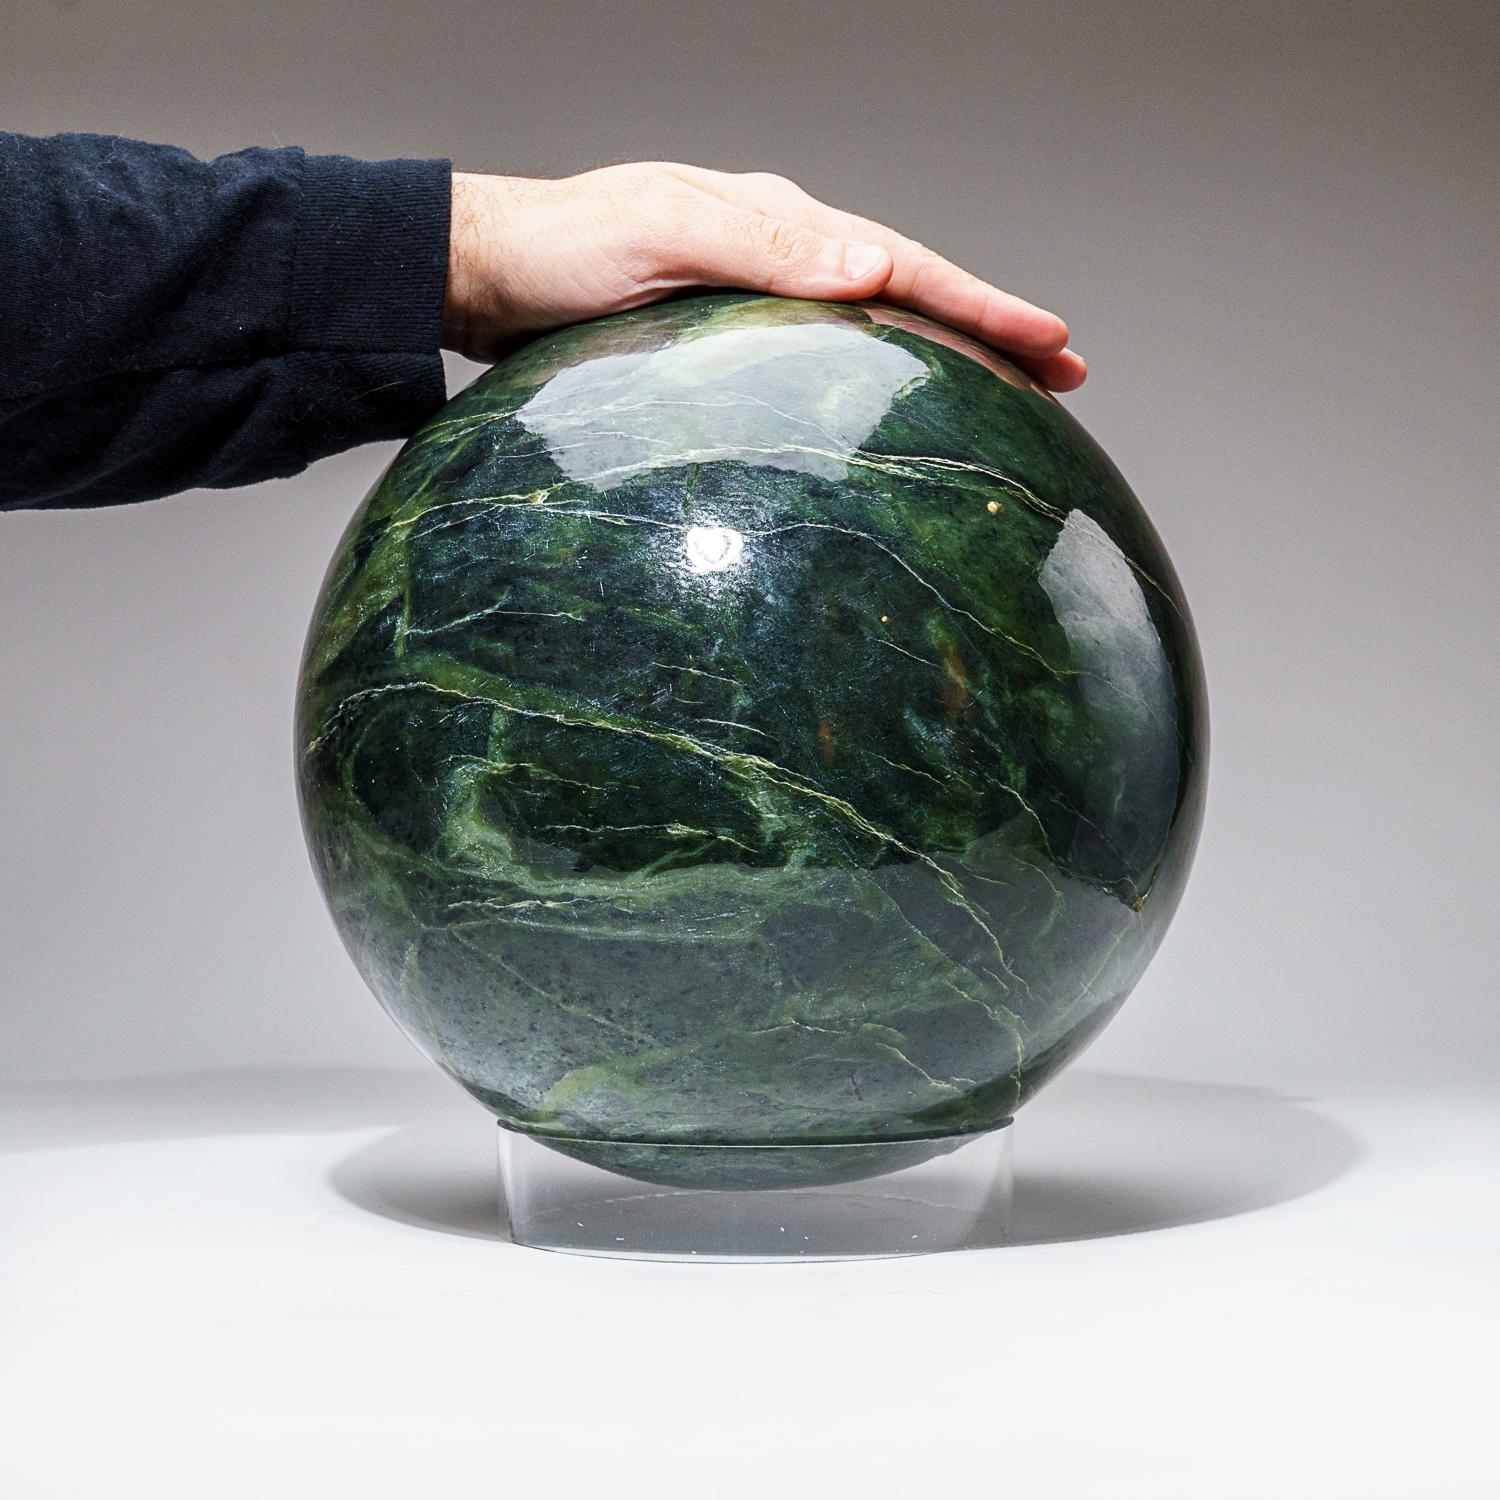 Énorme sphère de jade néphrite de qualité AAA sur un présentoir en acrylique. Cette magnifique pièce est polie à la main à partir d'un morceau massif de jade néphrite naturel. Il présente une excellente brillance, un motif étonnant et constitue un